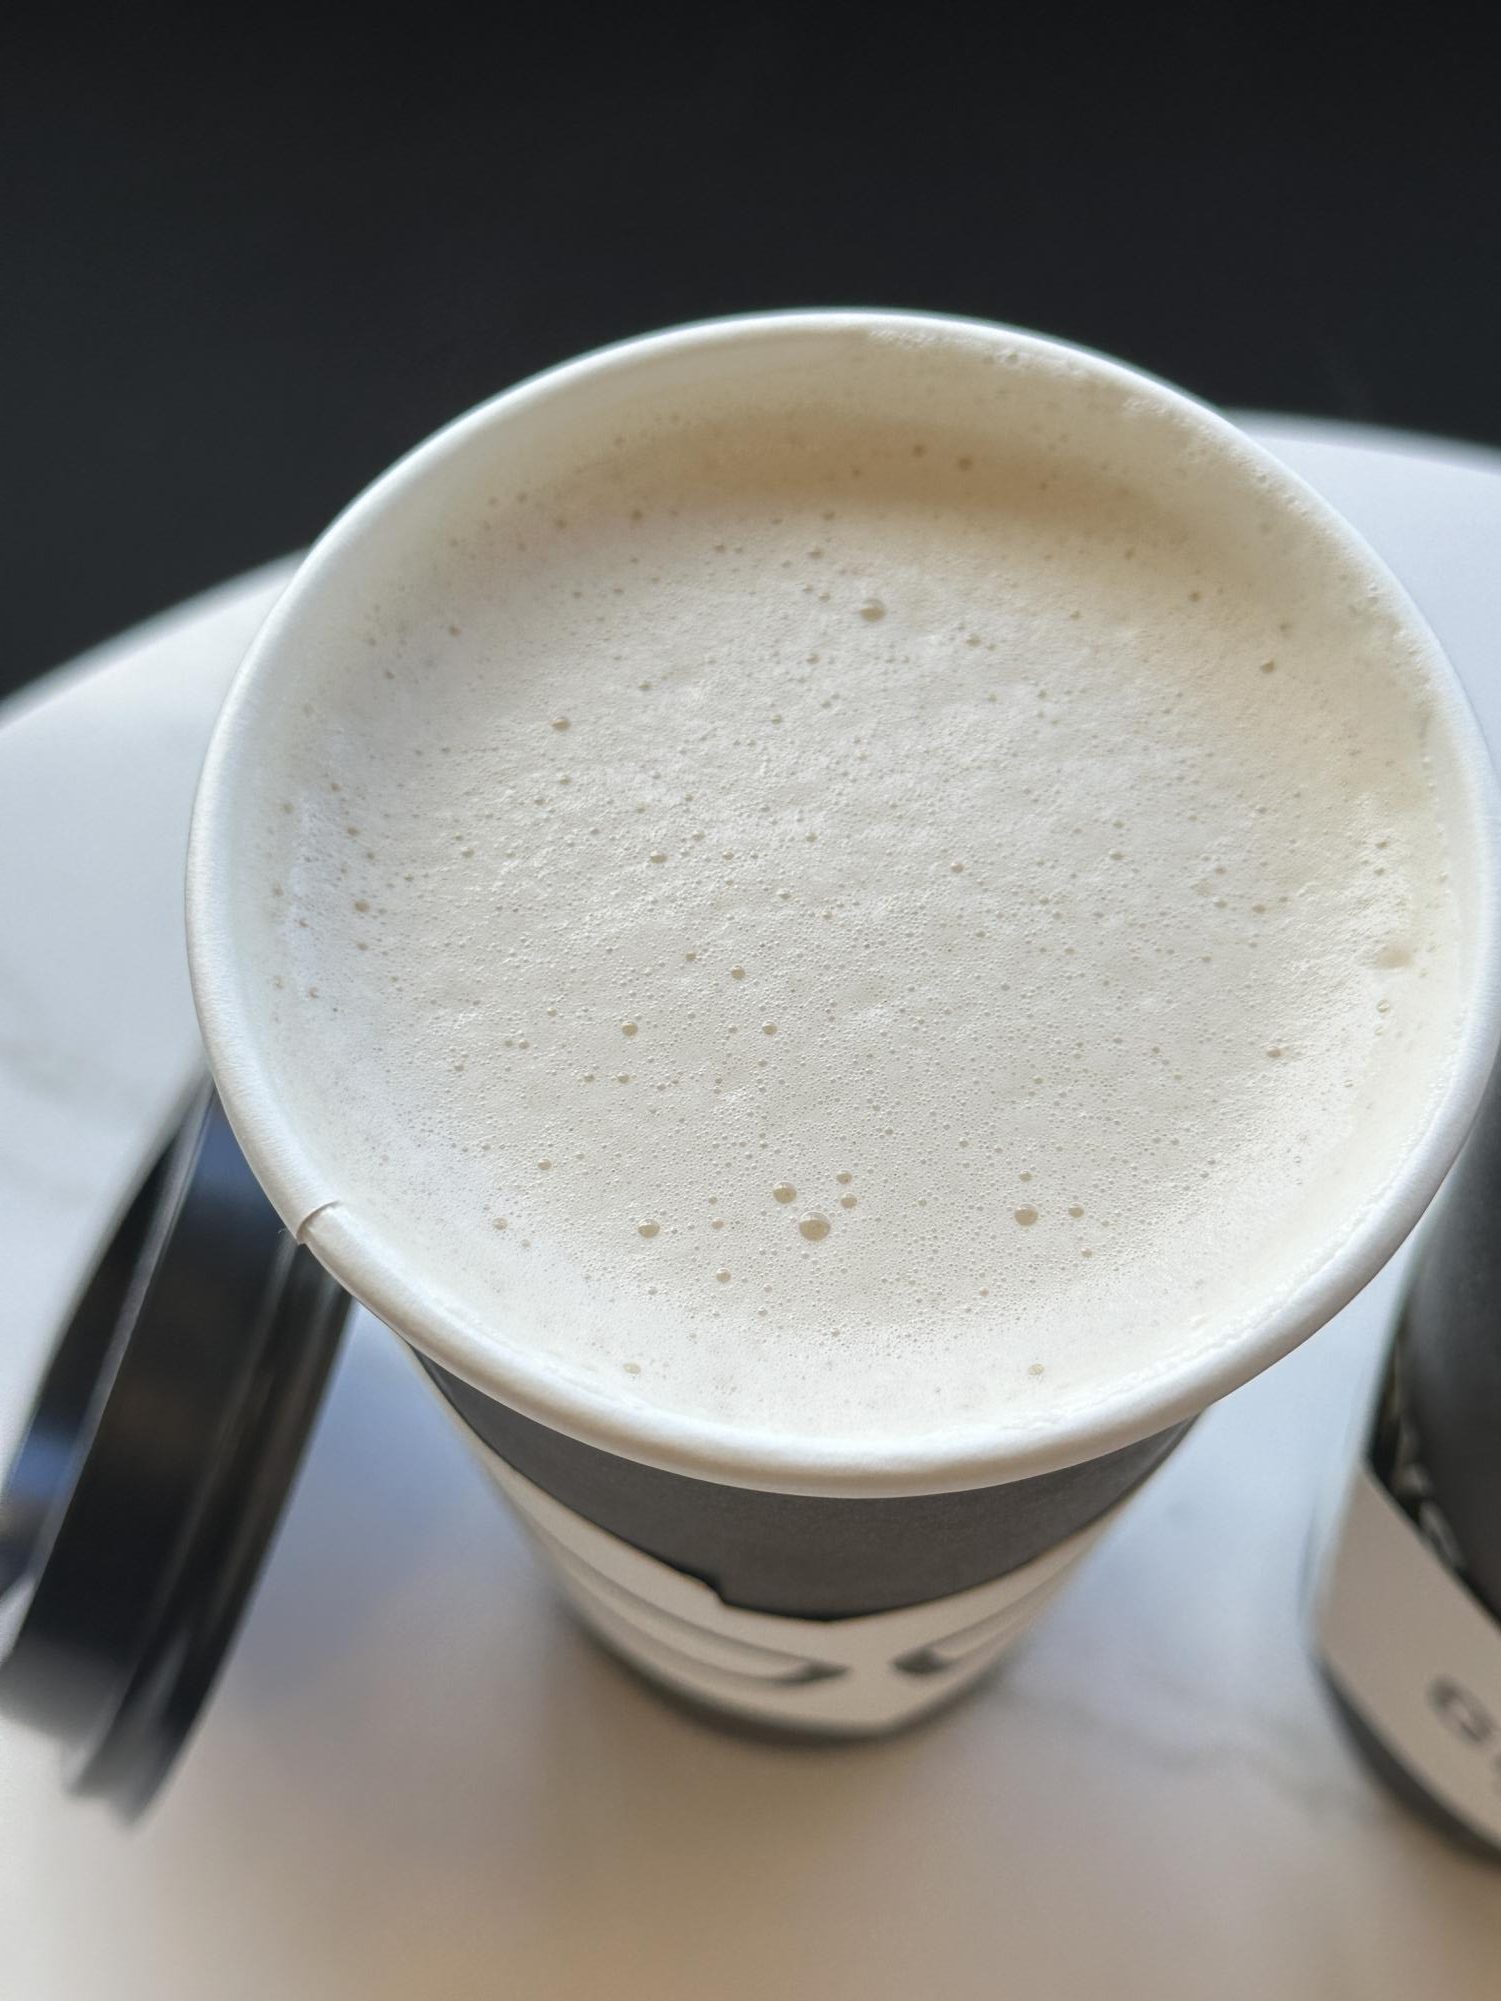 The Chai Latte